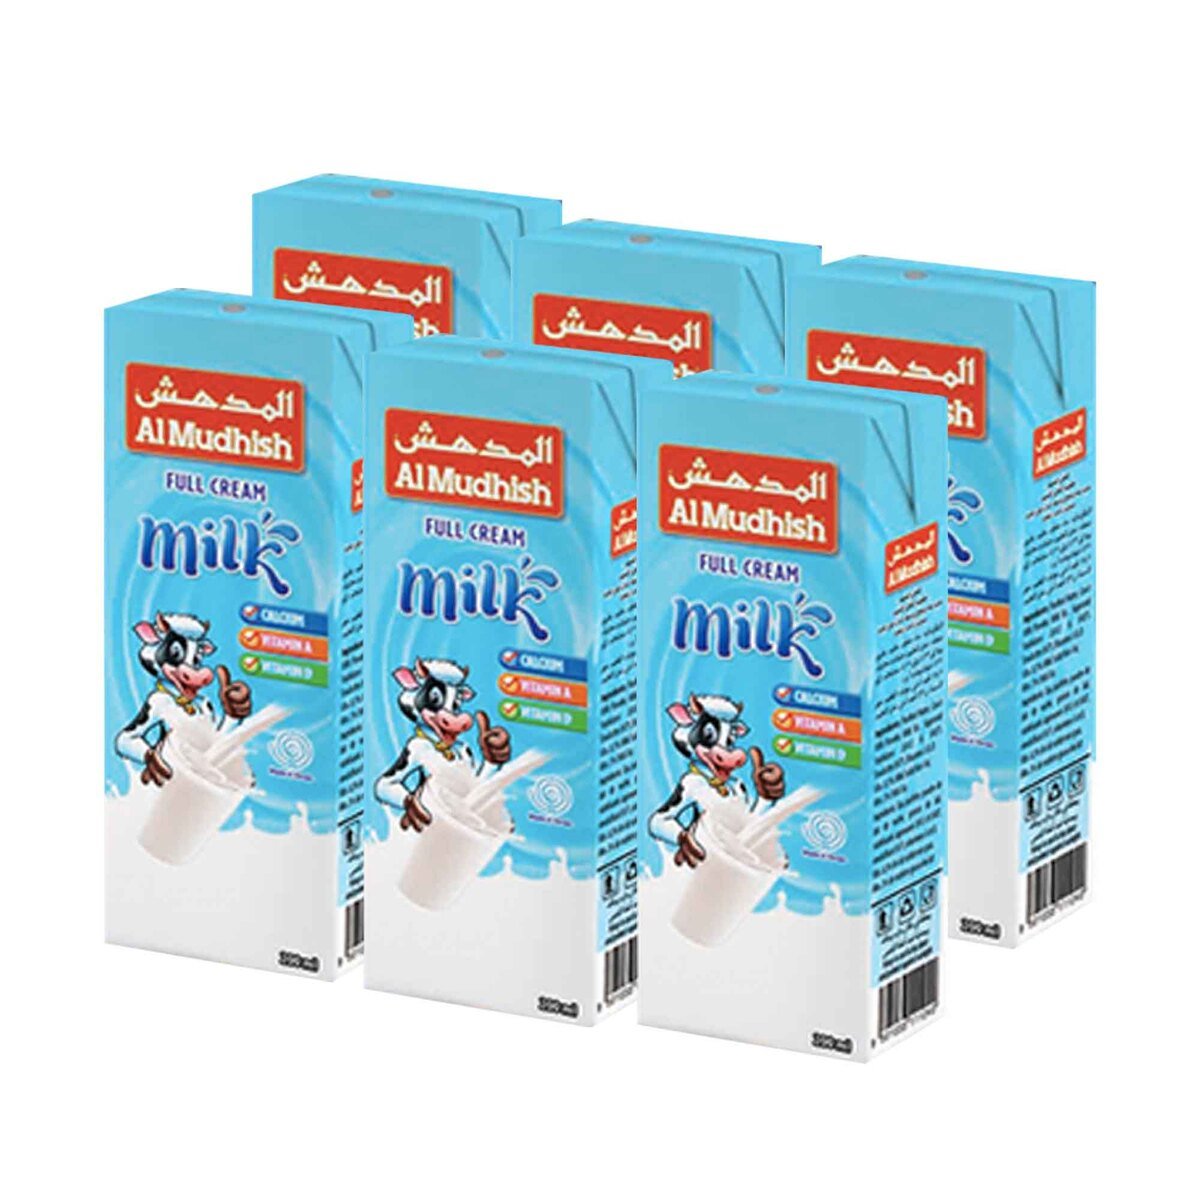 Al Mudhish UHT Milk Full Cream 6 x 200ml